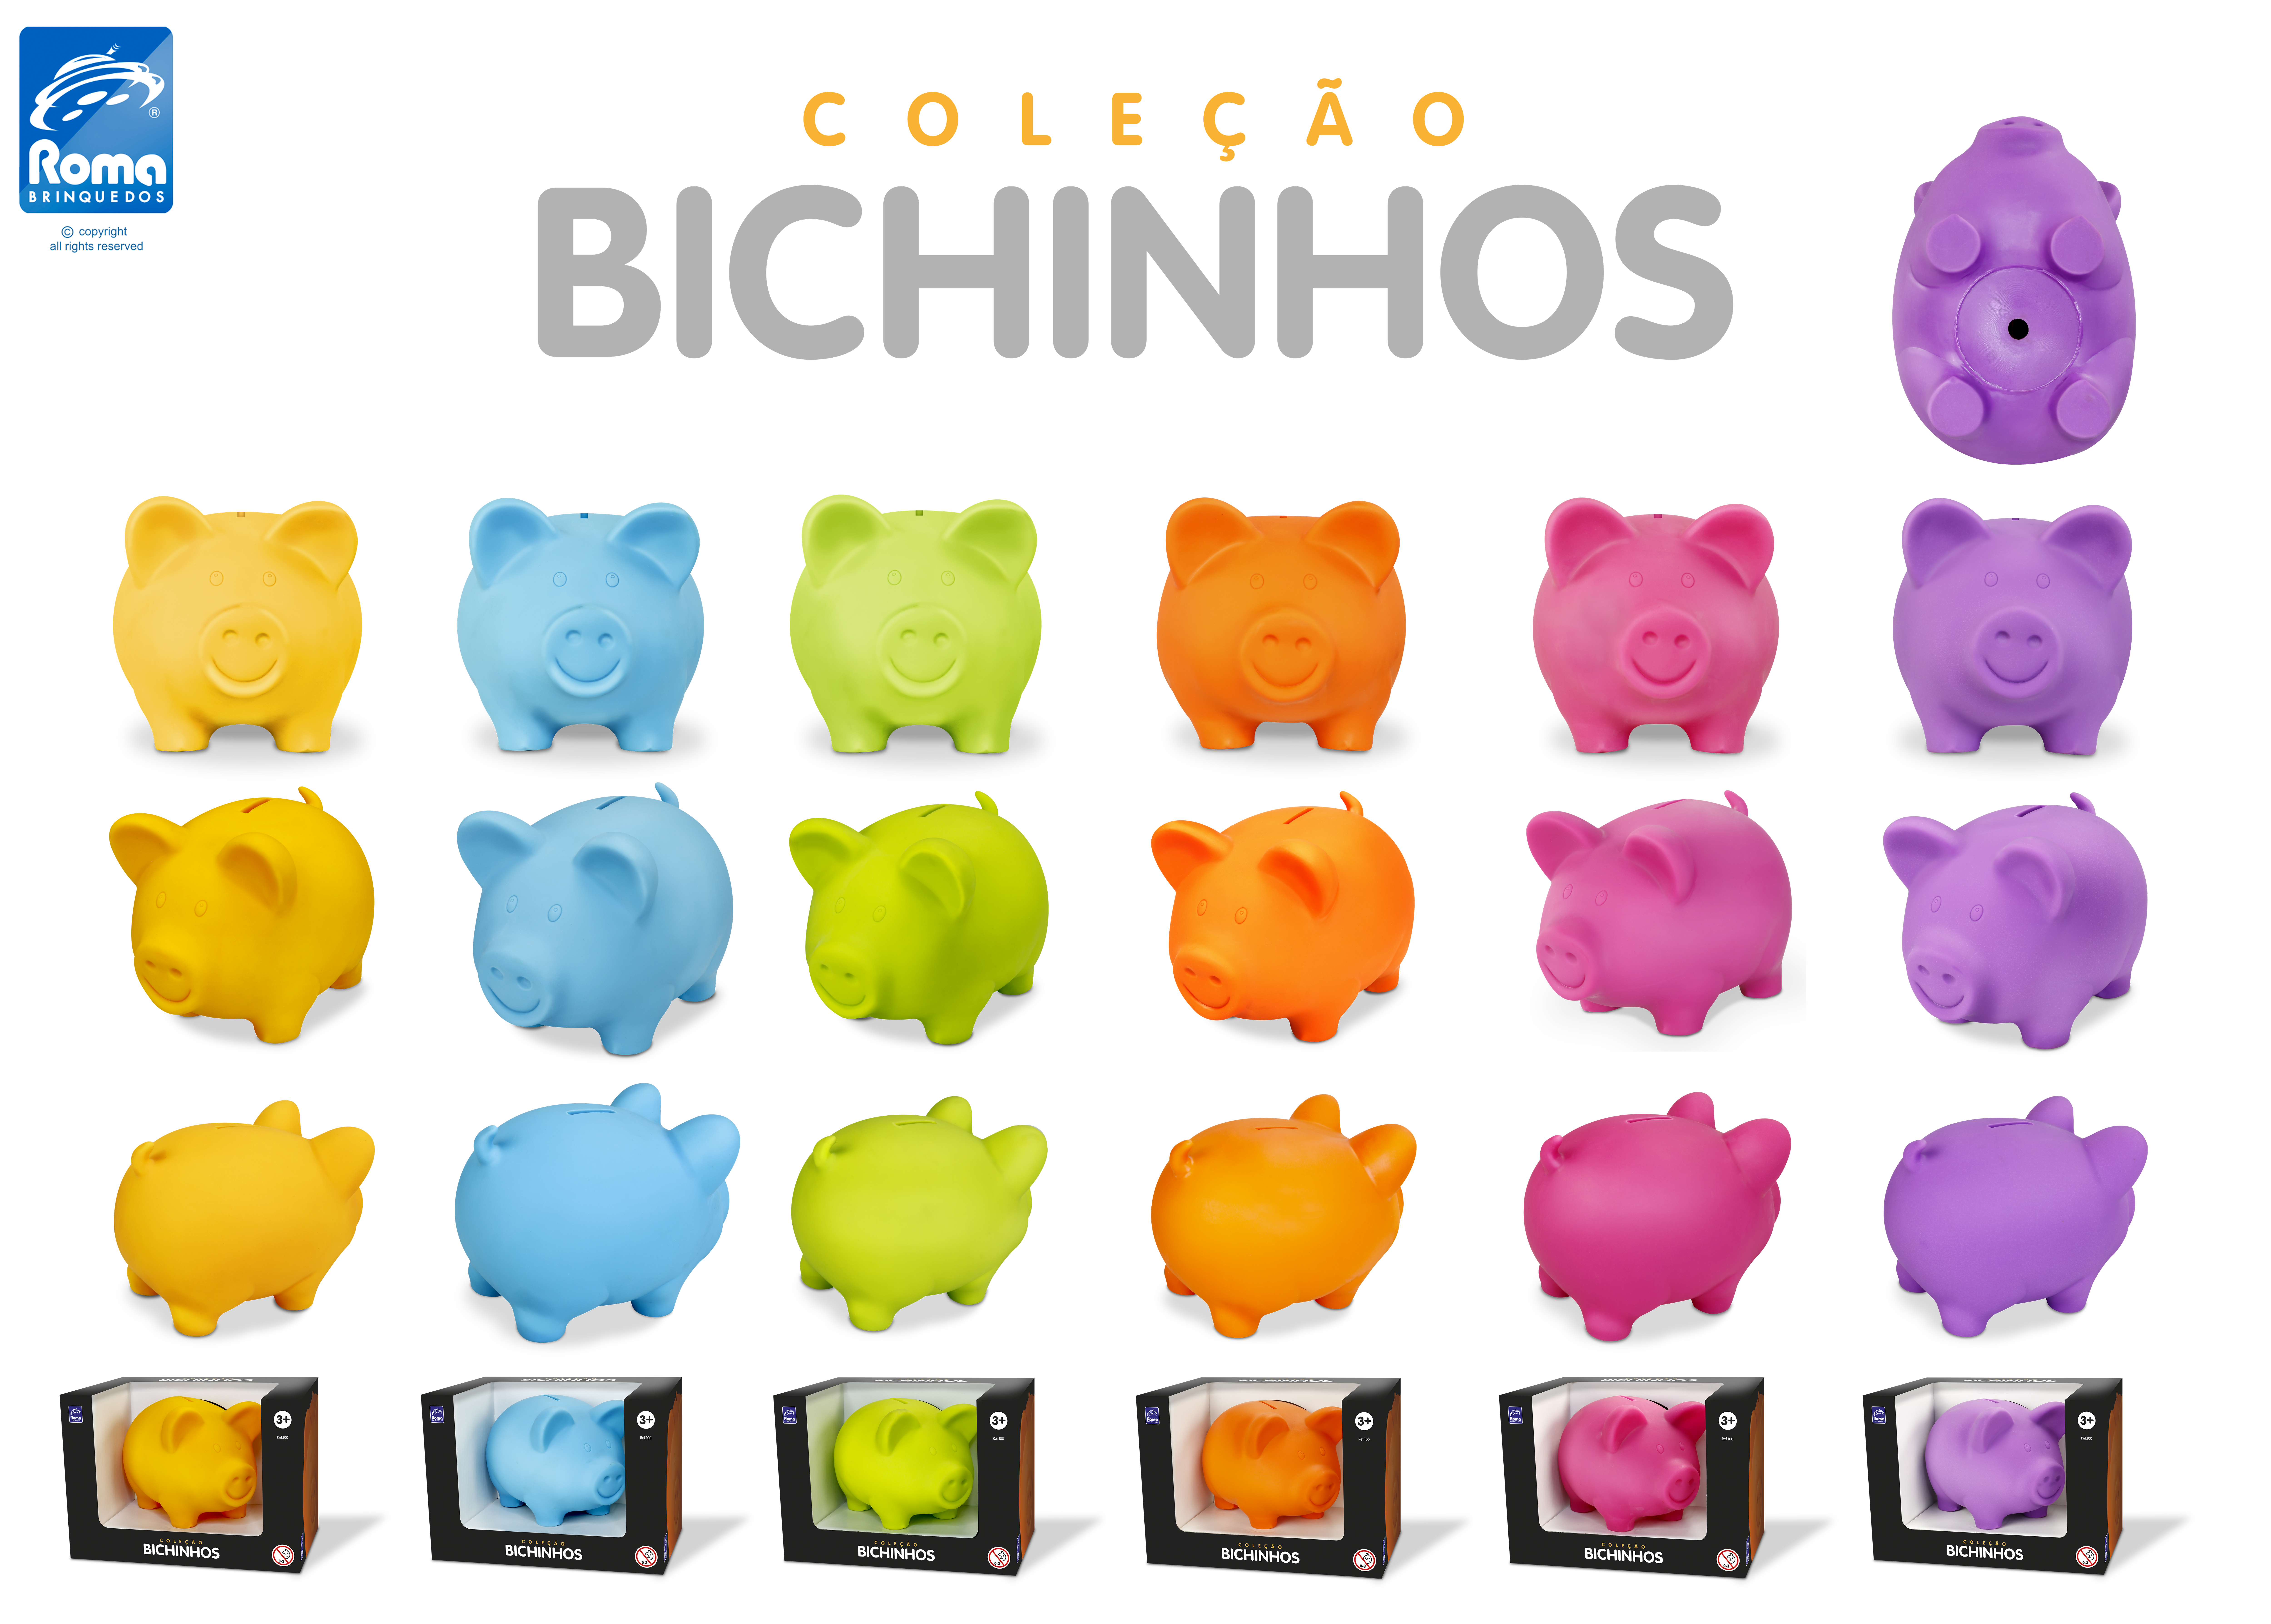 0100 - Coleção Bichinhos - Porco Tradicional.png